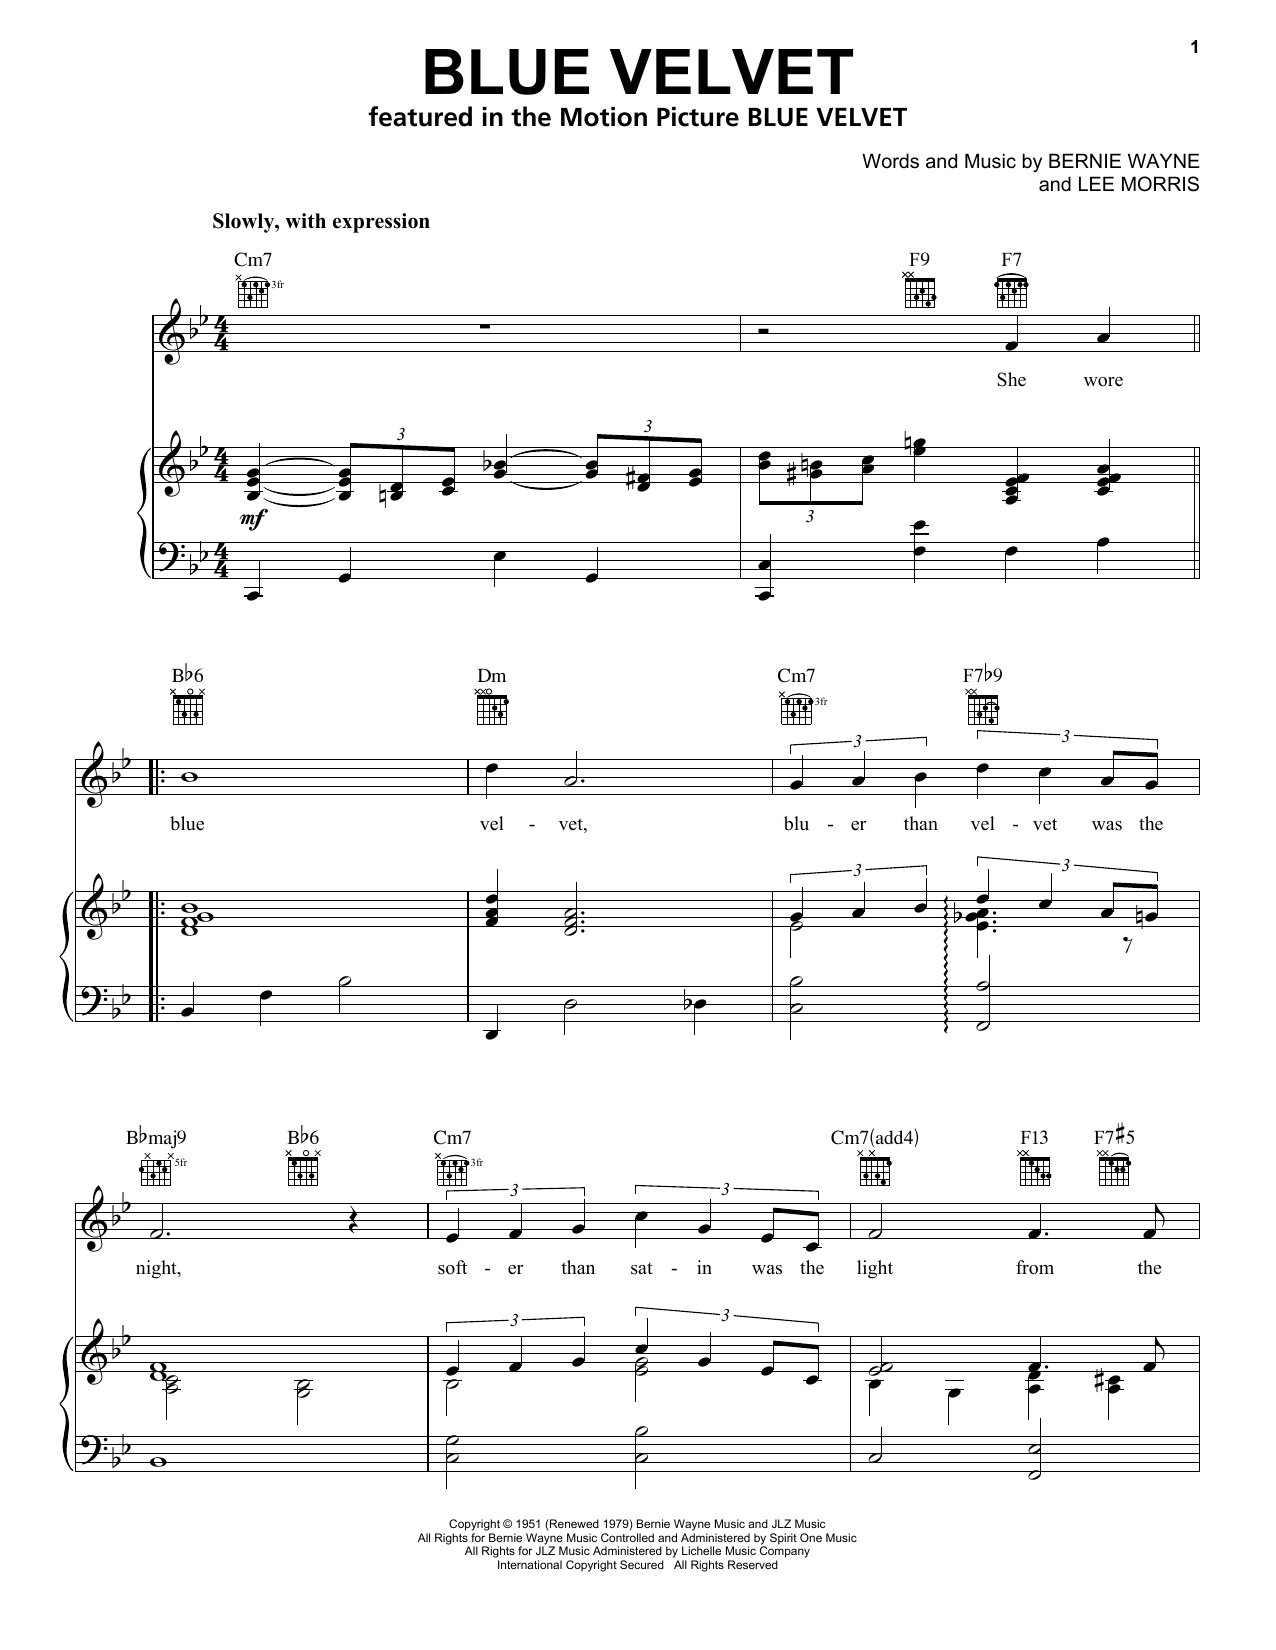 Bobby Vinton Blue Velvet Sheet Music Notes & Chords for Tenor Saxophone - Download or Print PDF